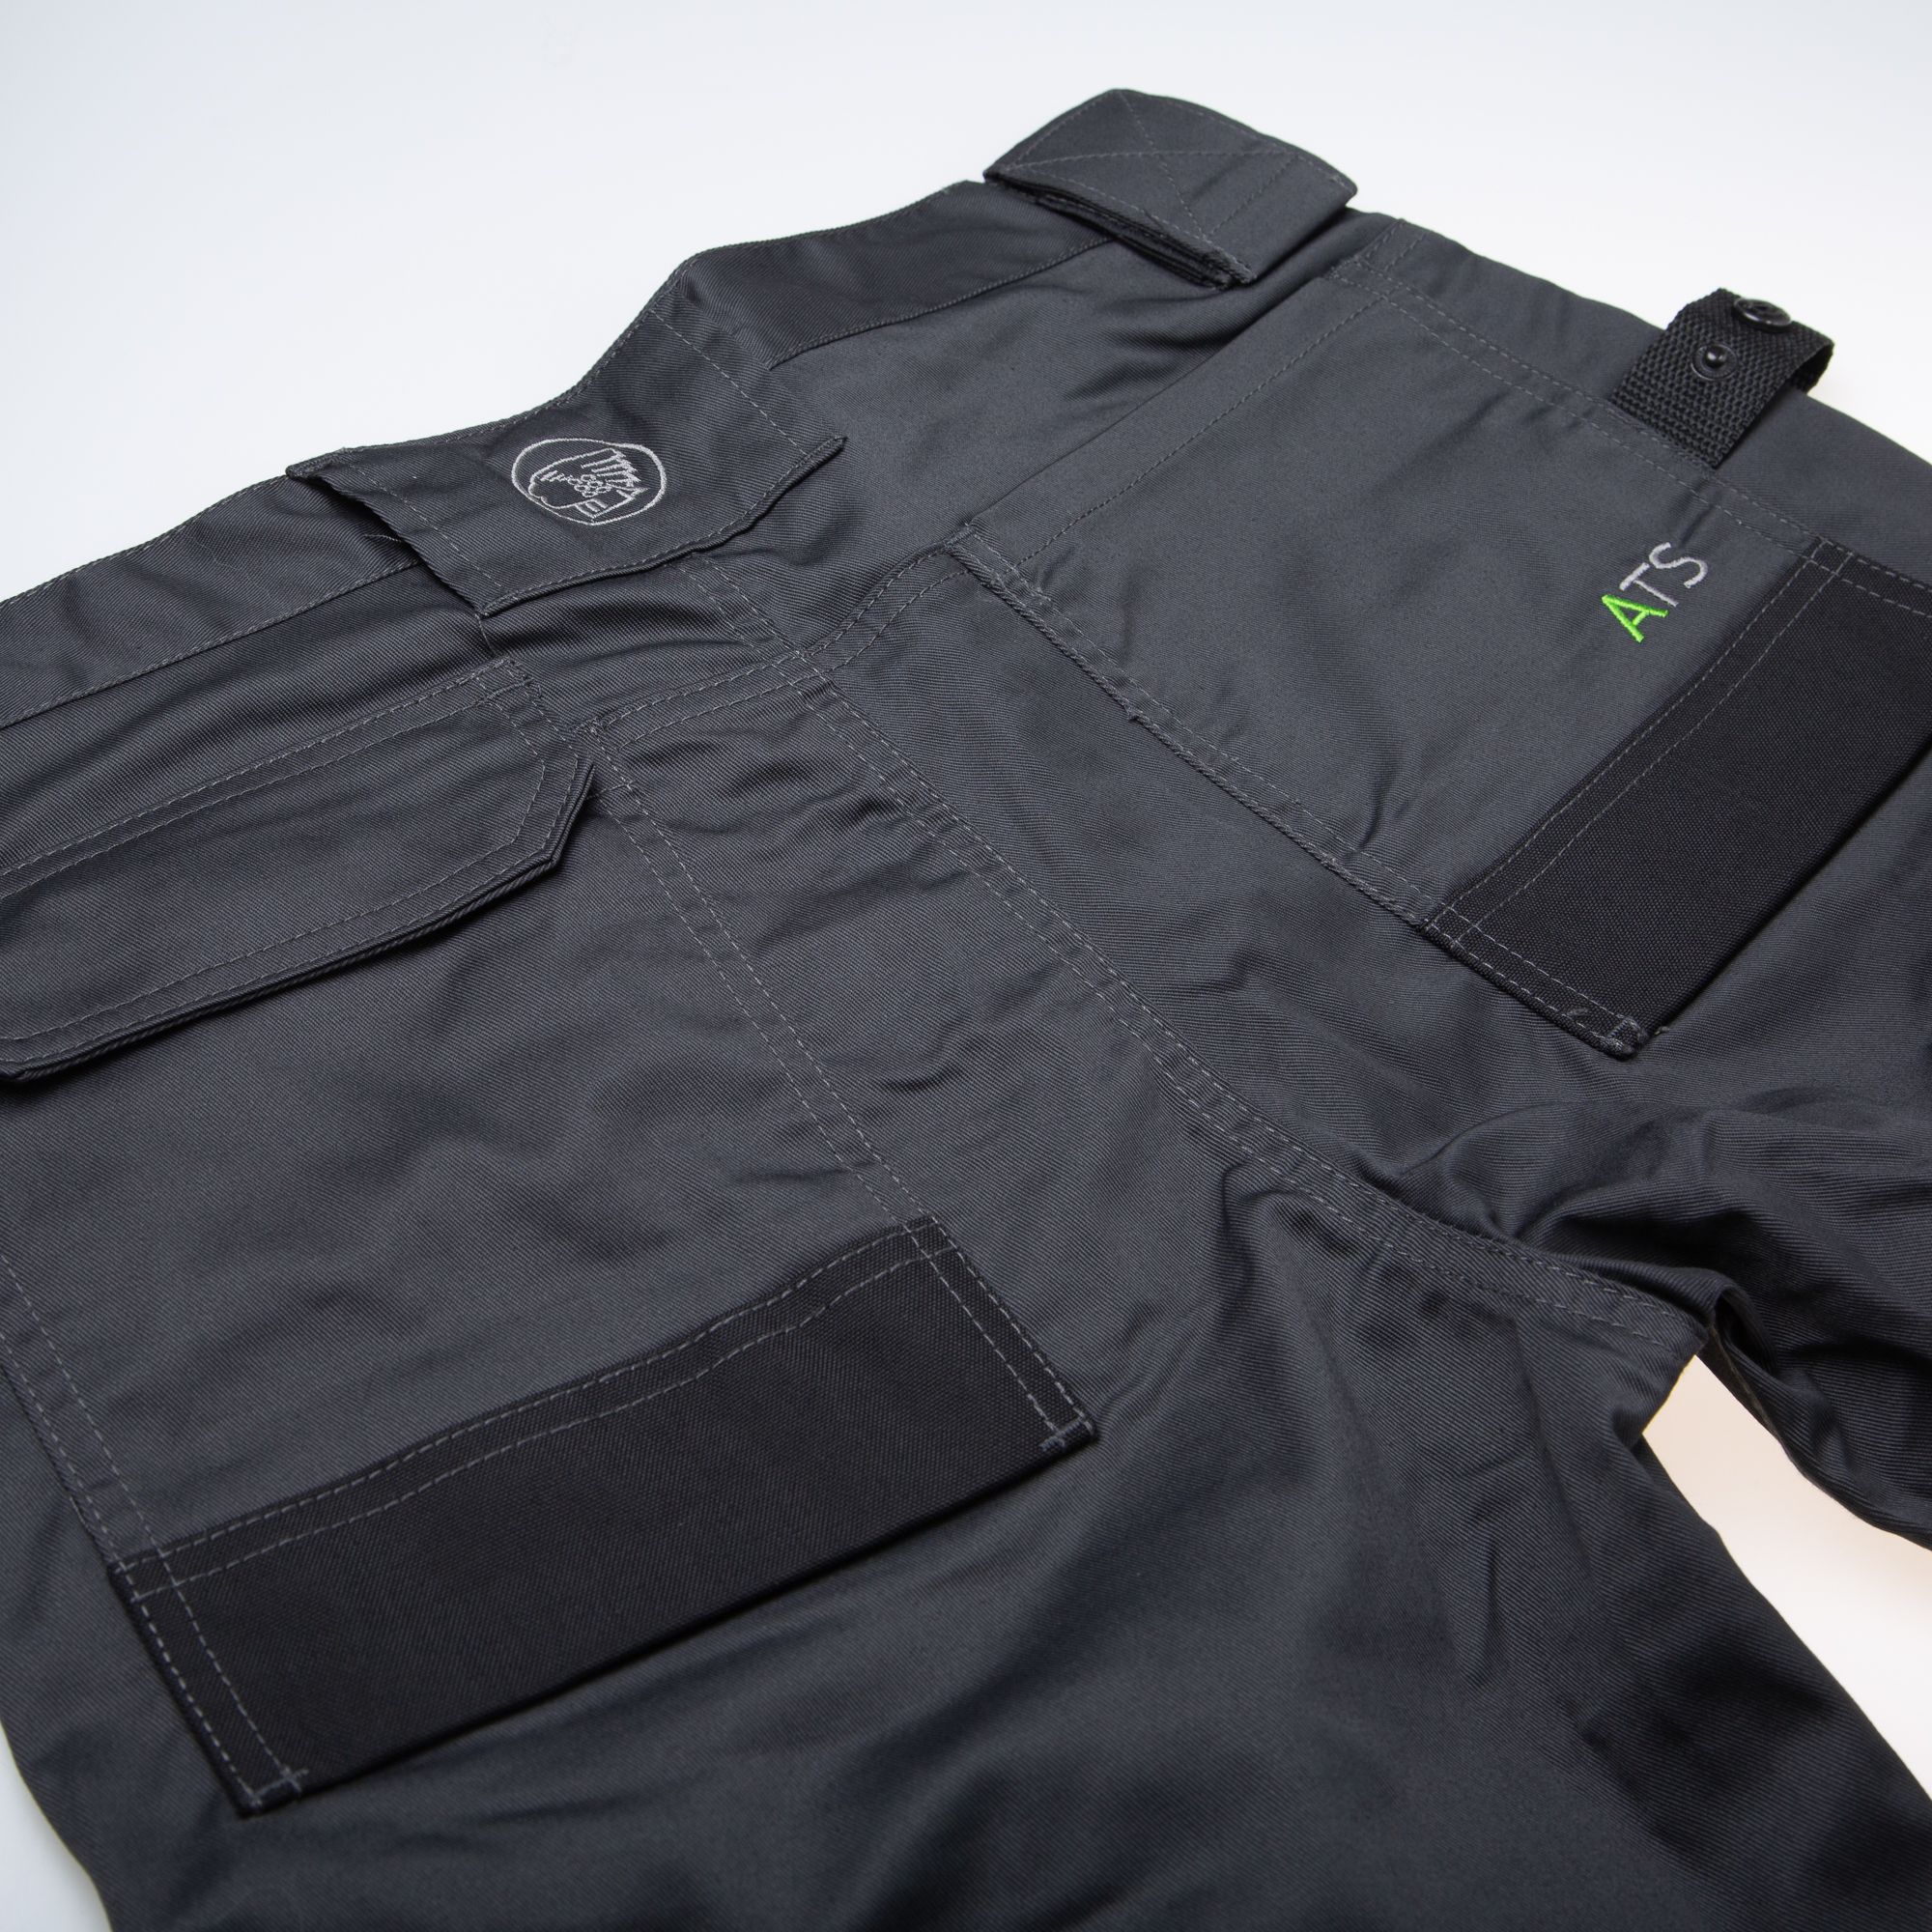 Apache Industrial Wear Grey & black Men's Holster pocket trousers, W32" L31"